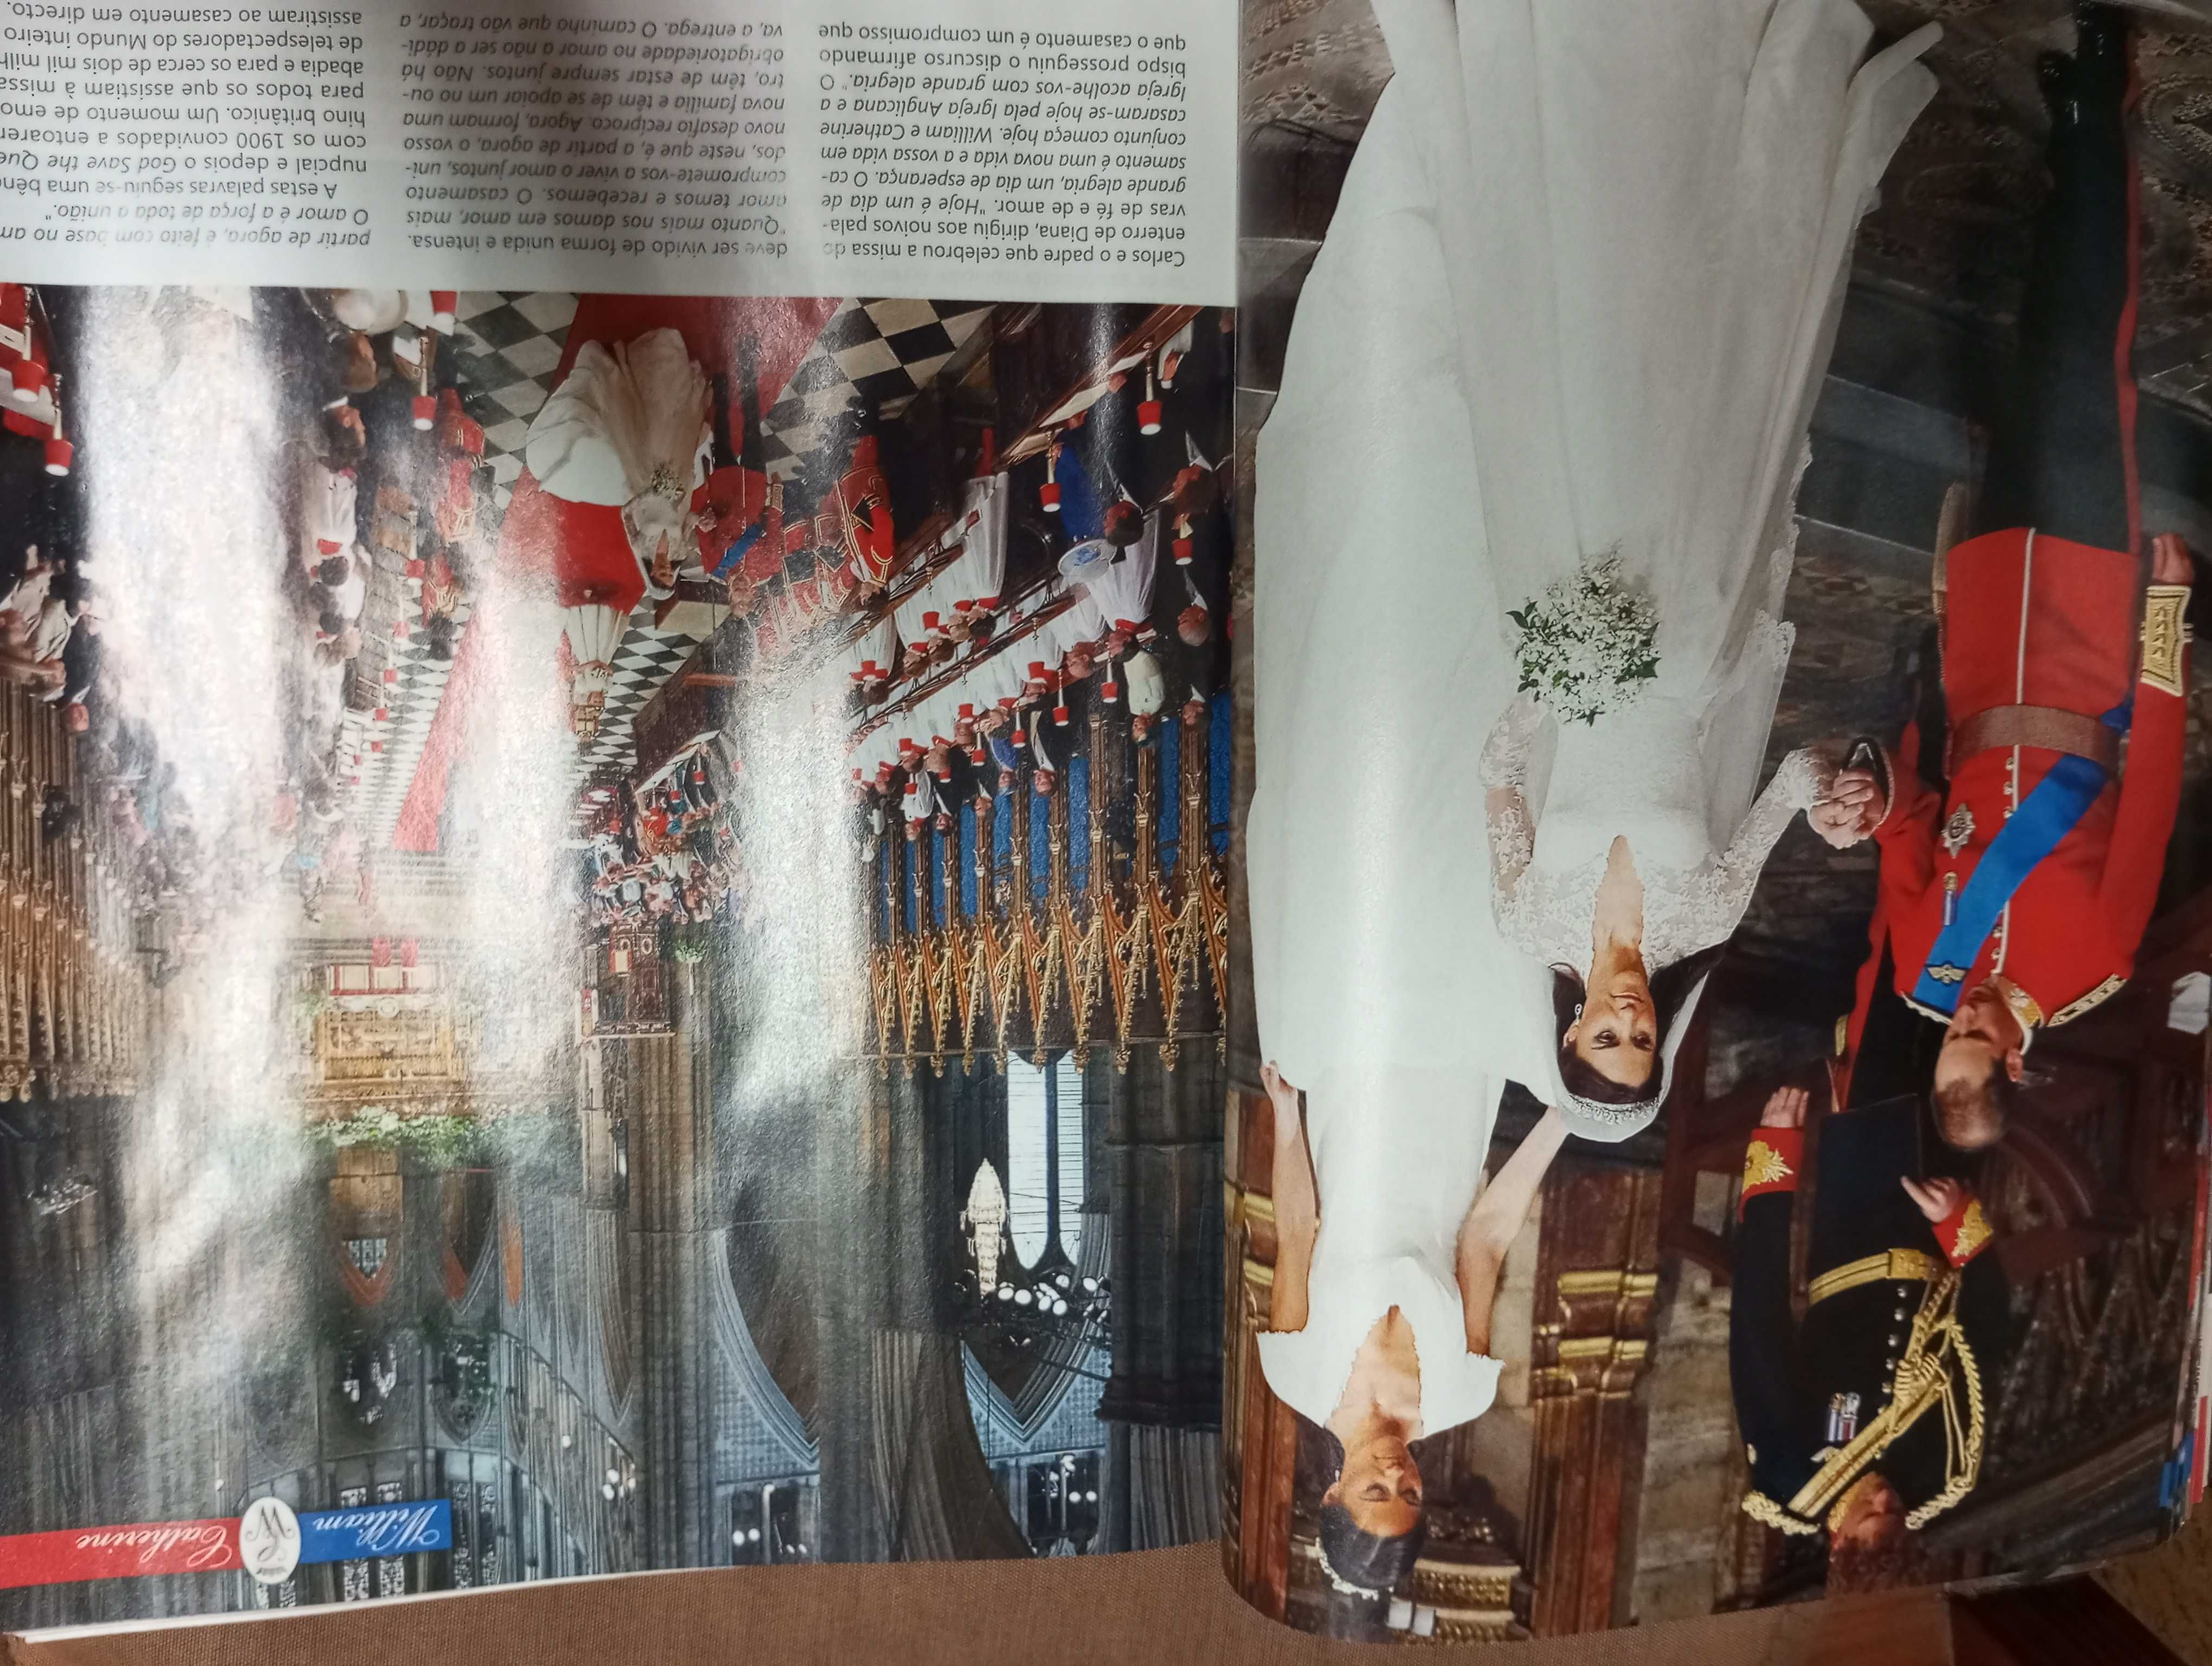 Revista VIP dedicada em grande parte ao casamento de William e Kate.